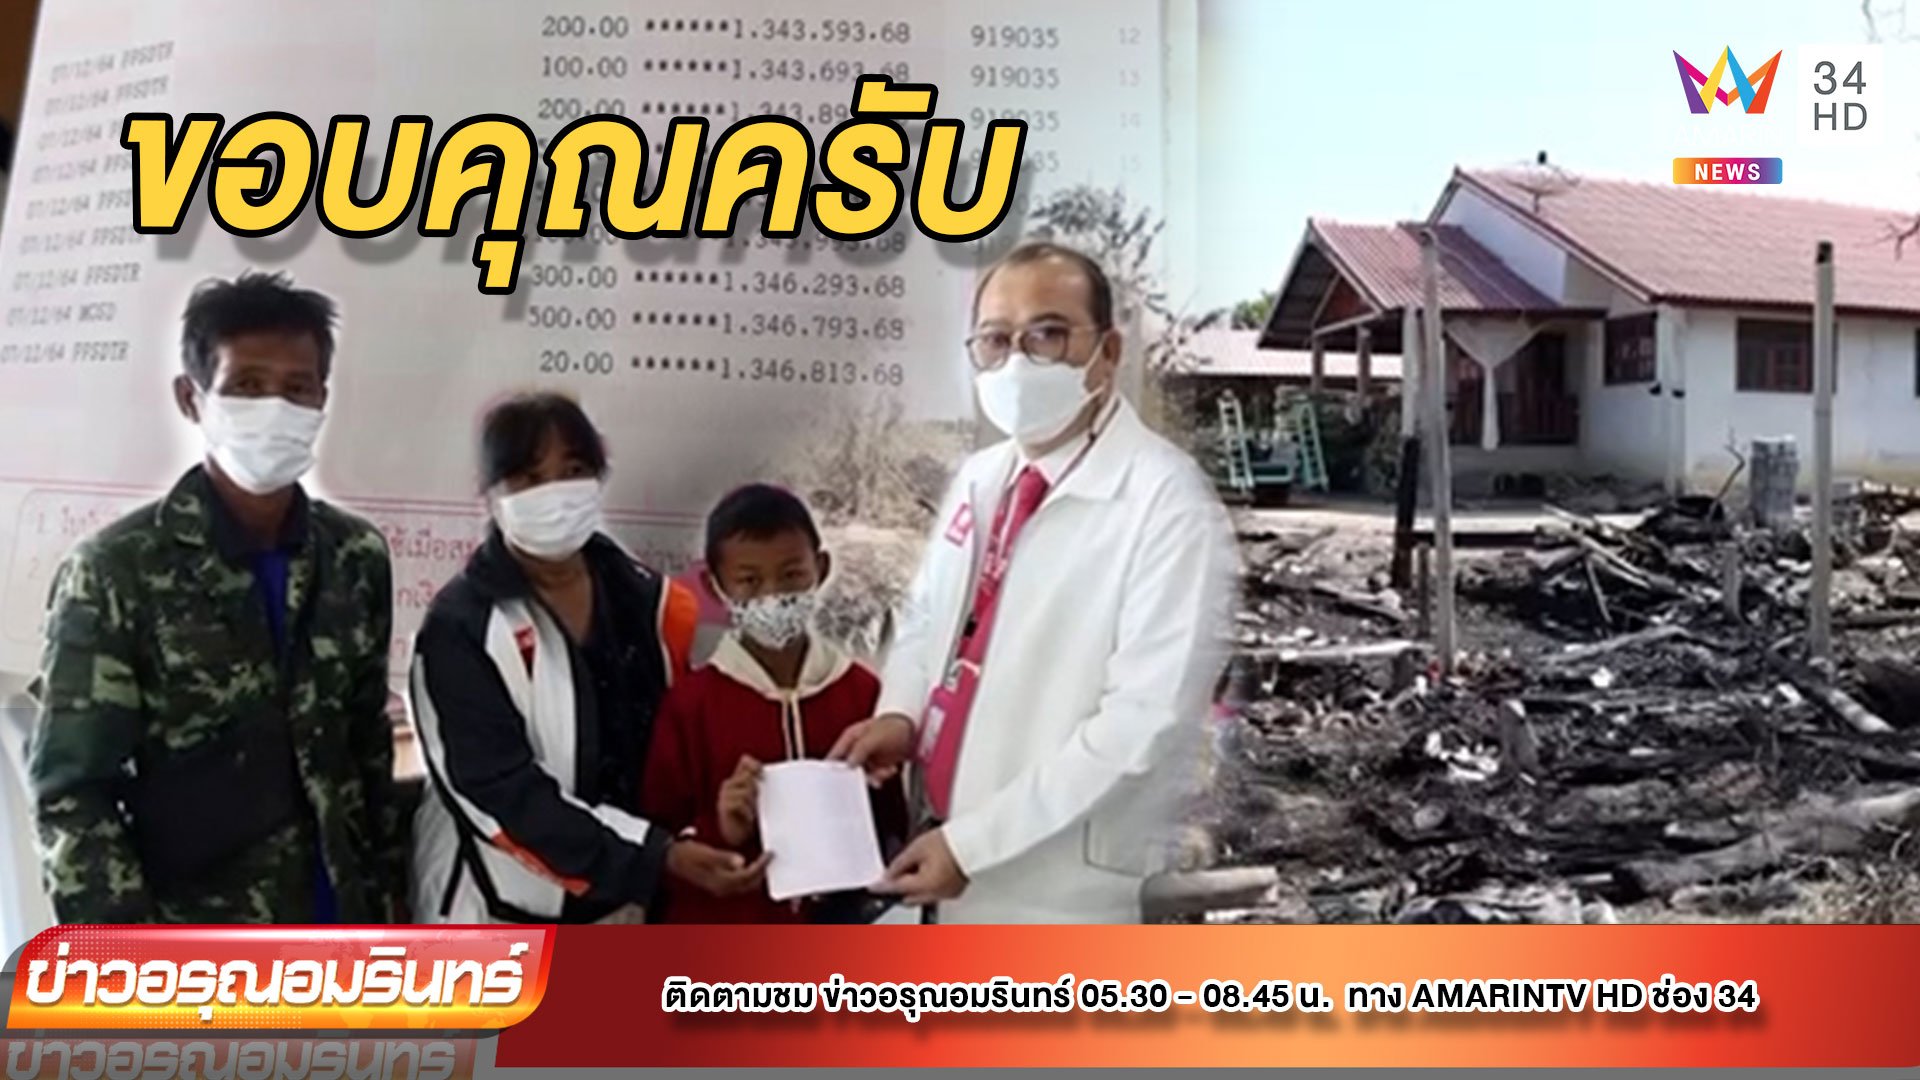 ปิดบัญชีช่วย “น้องอาร์ม” บ้านไฟไหม้ ยอดบริจาค 1.3 ล้าน | ข่าวอรุณอมรินทร์ | 8 ธ.ค. 64 | AMARIN TVHD34